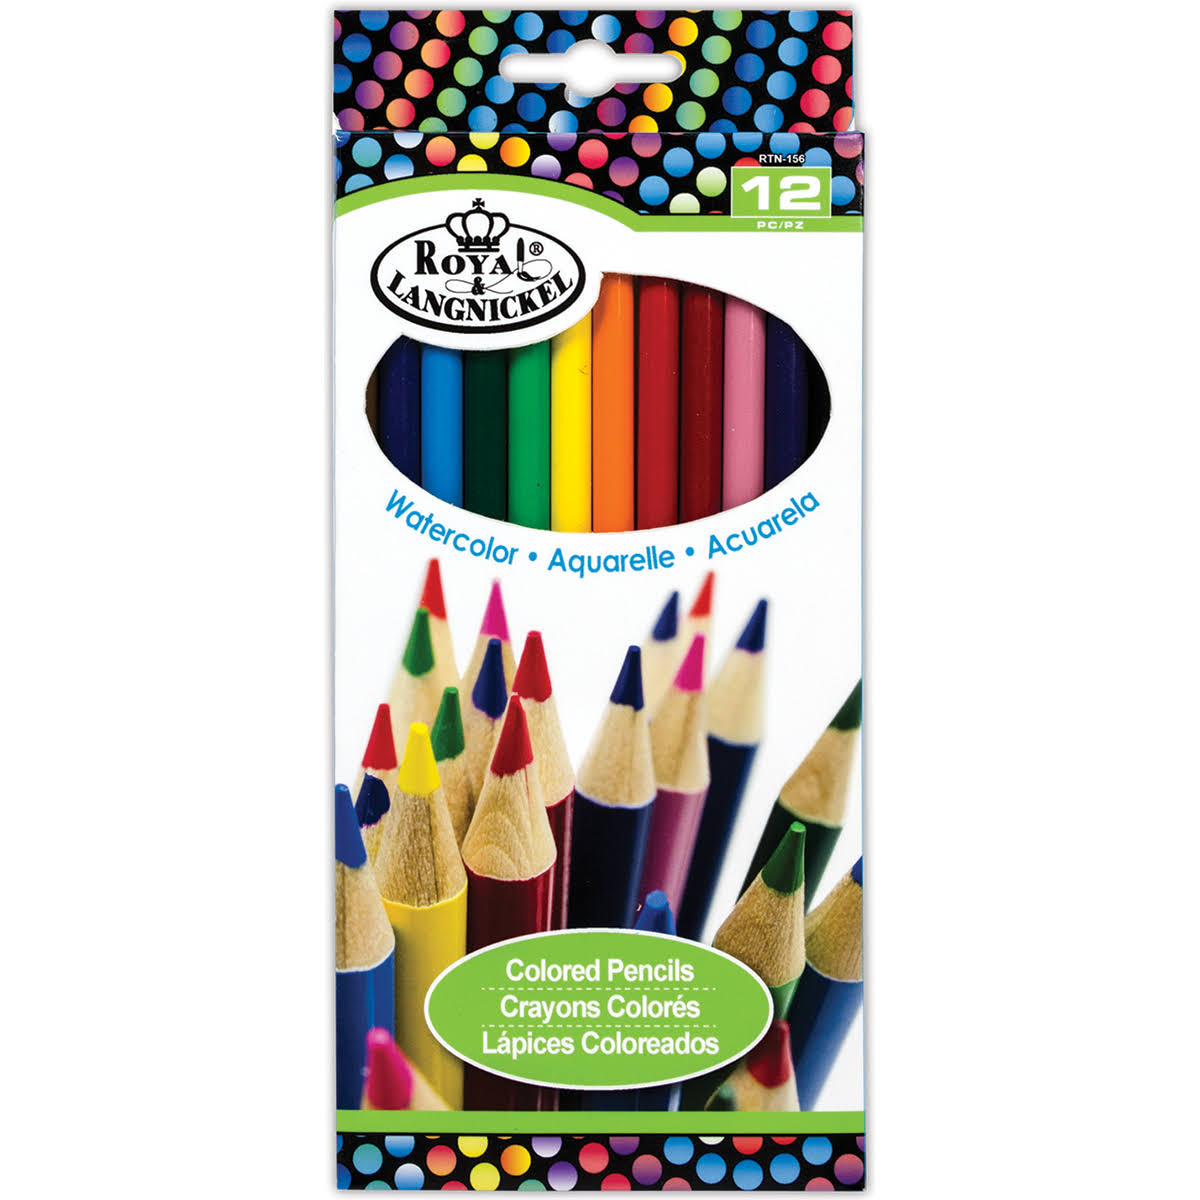 Royal & Langnickel Watercolor Pencils